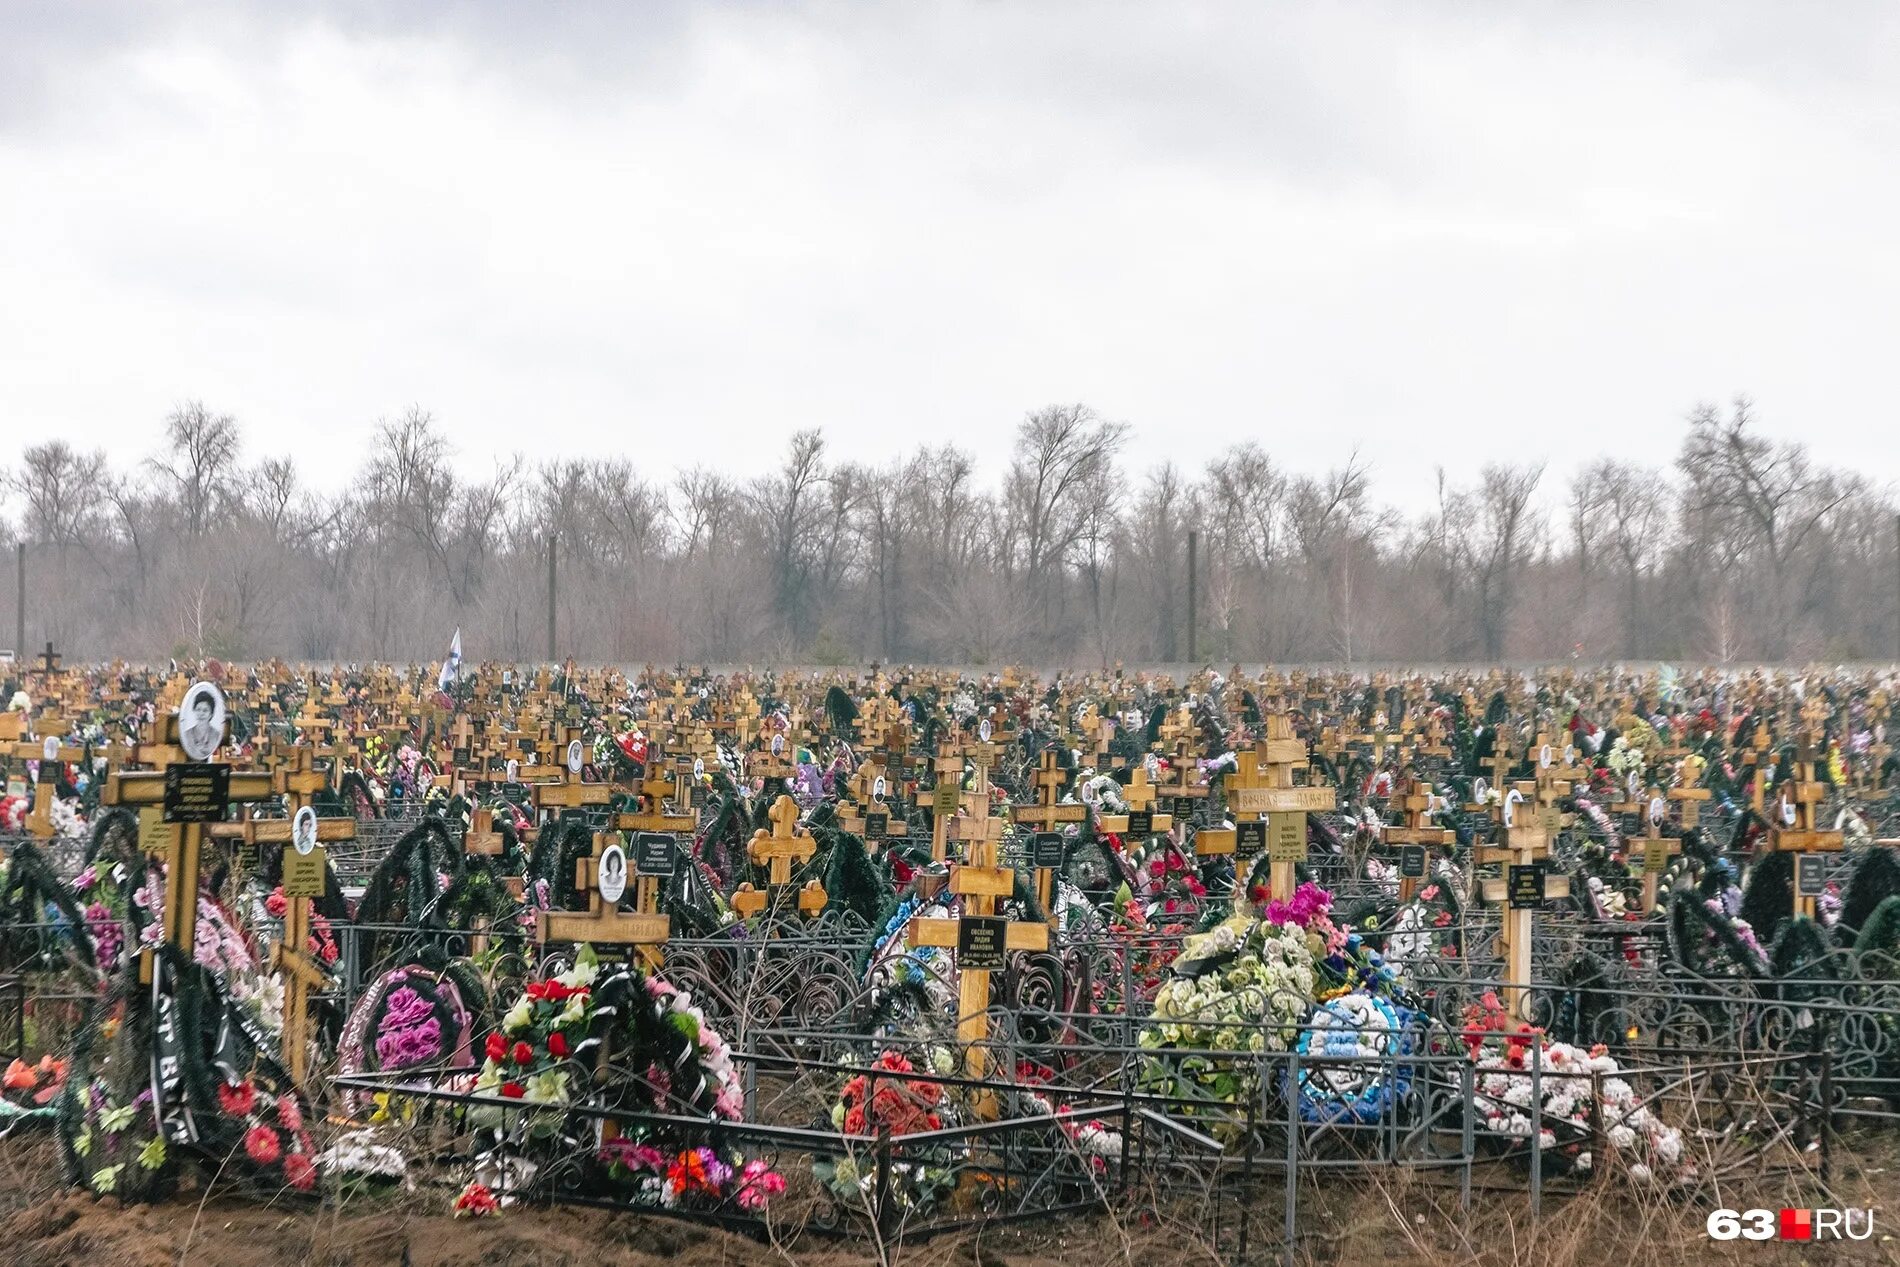 Кладбище. Российское кладбище. Кладбище людей в России.